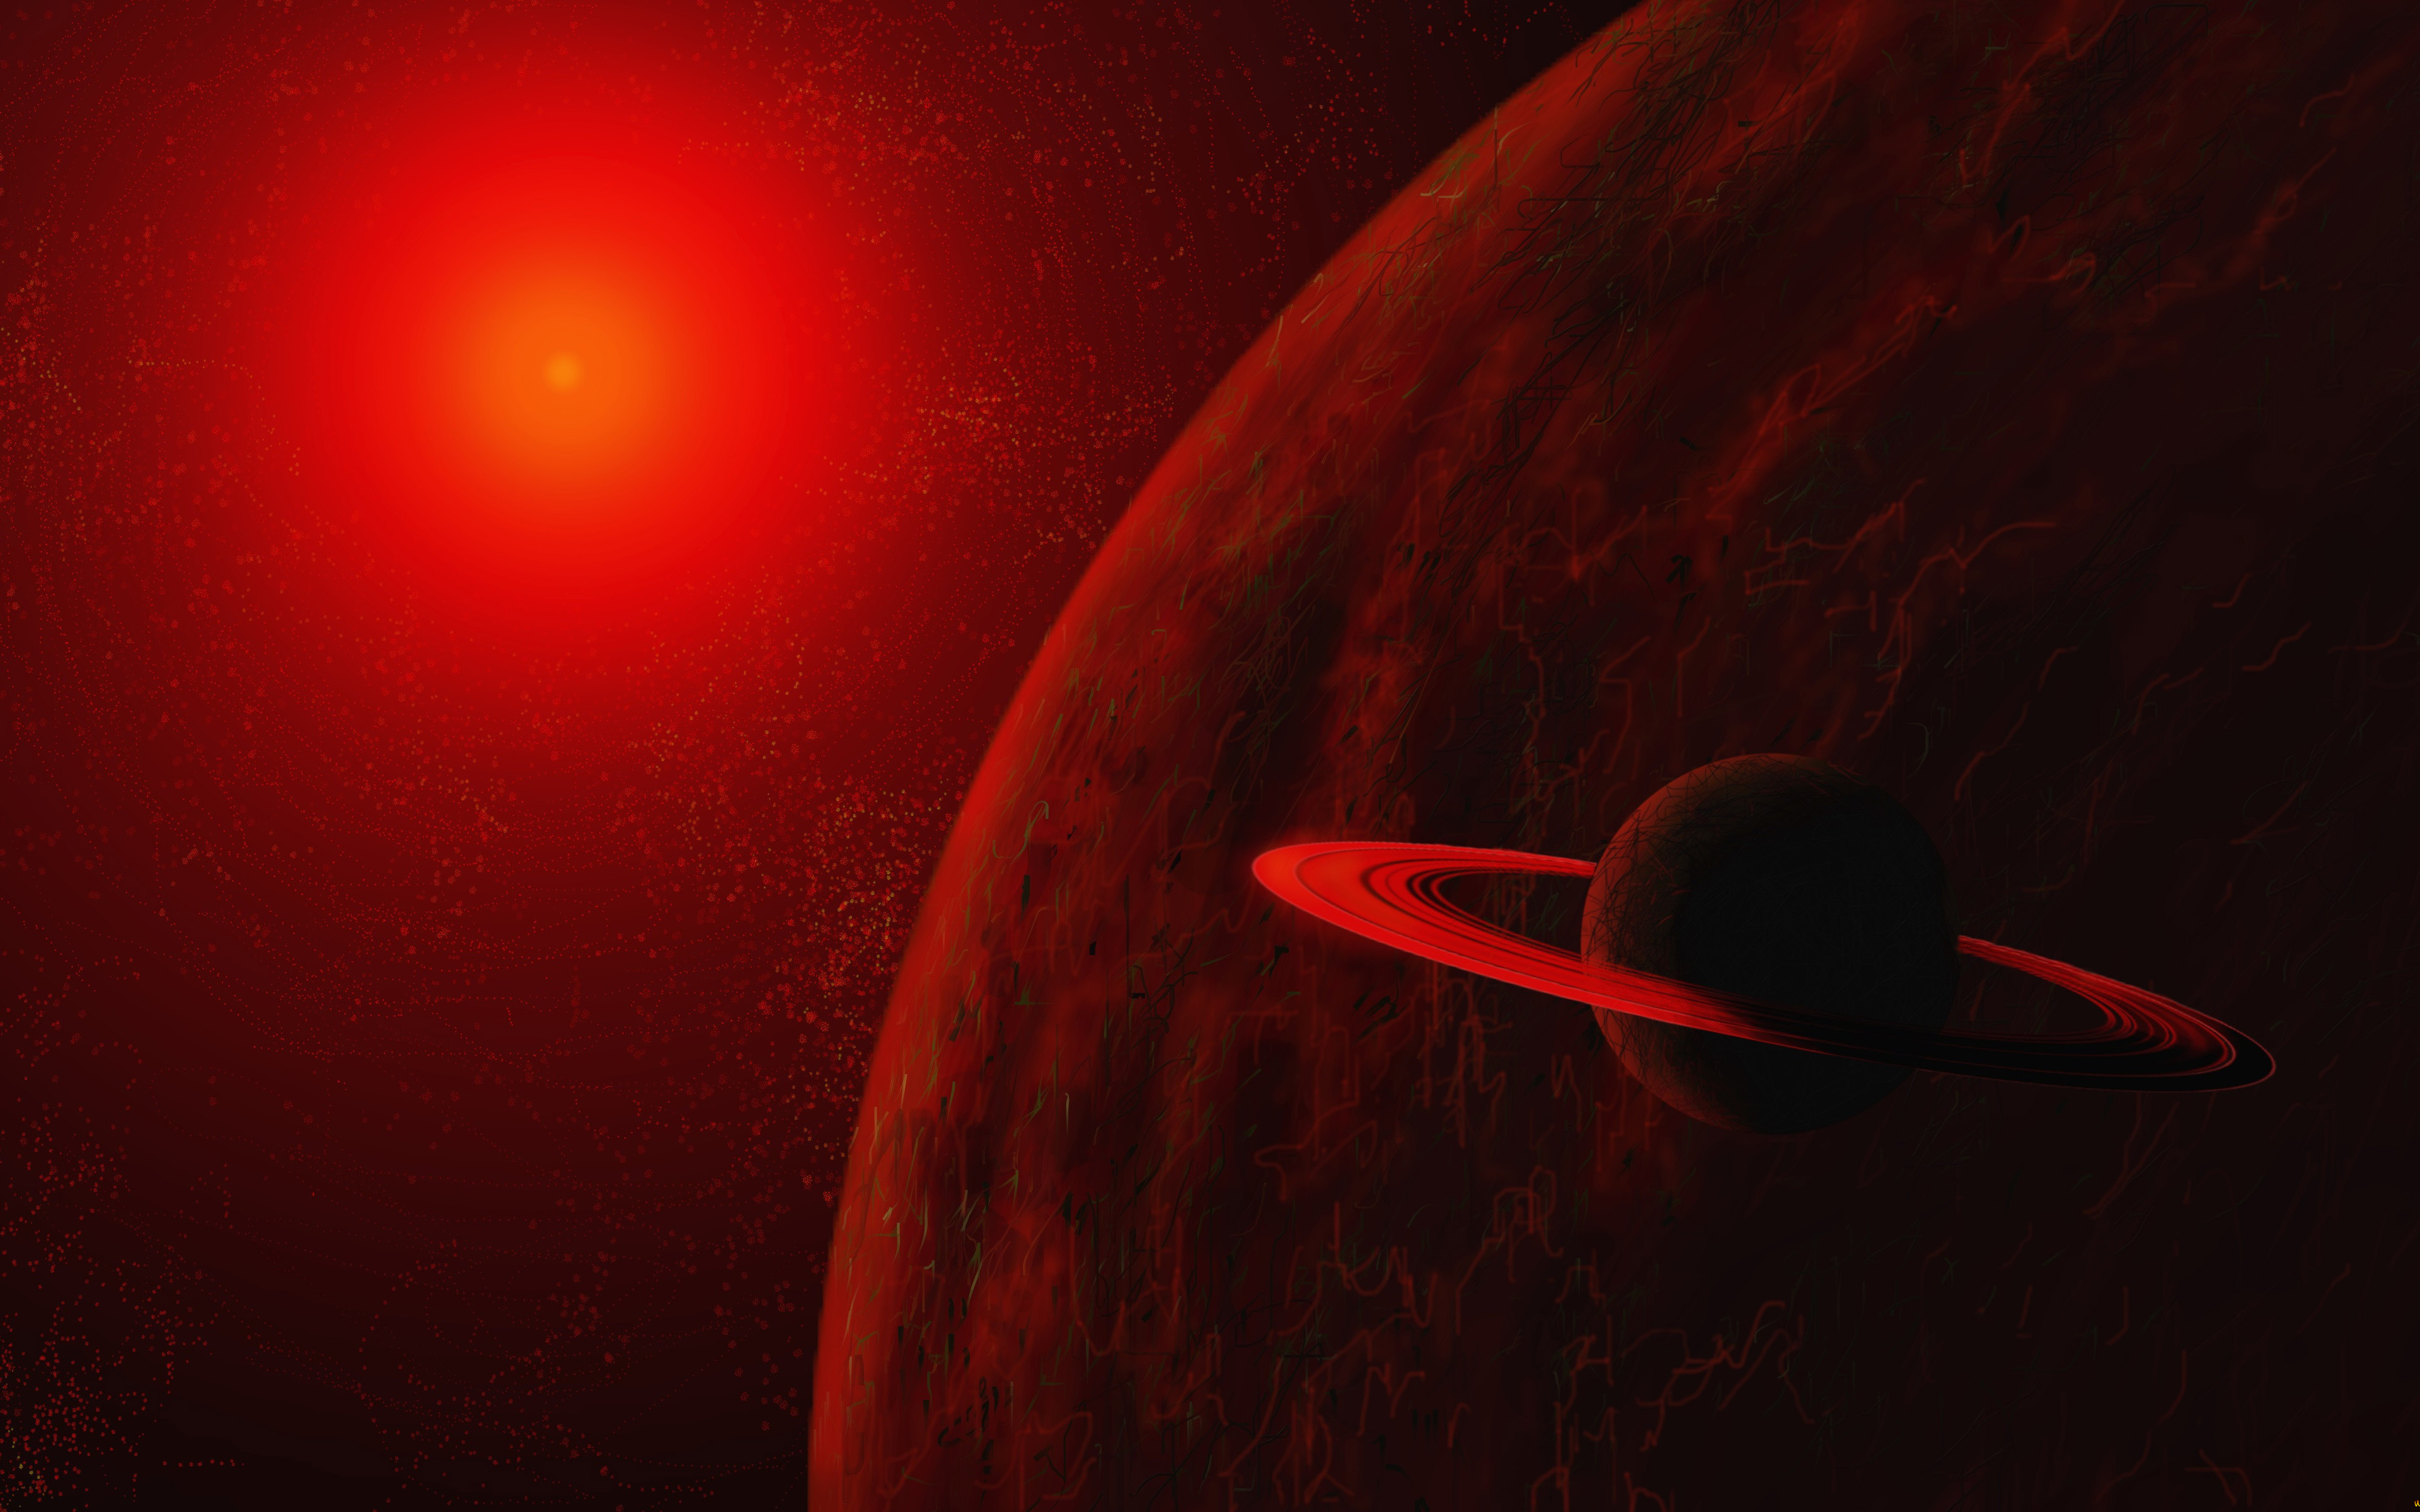 ダウンロード画像 赤い惑星 土星 4k 3dアート 小惑星 小宇宙 星雲 惑星 レッドスター 画面の解像度 3840x2400 壁紙 デスクトップ上